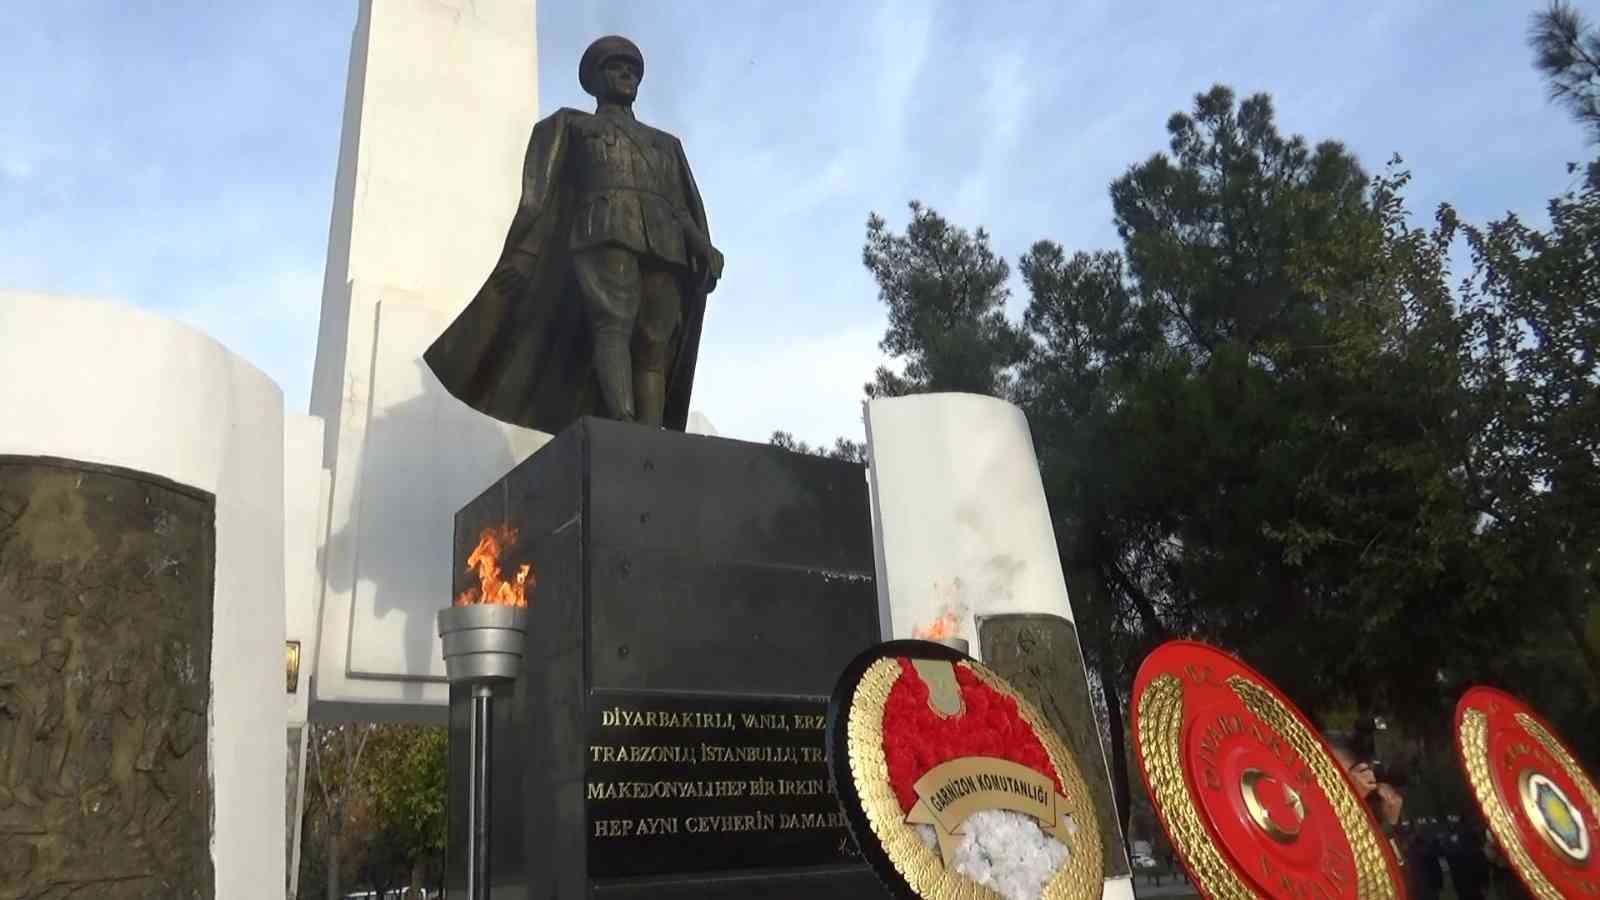 Diyarbakır’da 10 Kasım Atatürk’ü anma töreni #diyarbakir